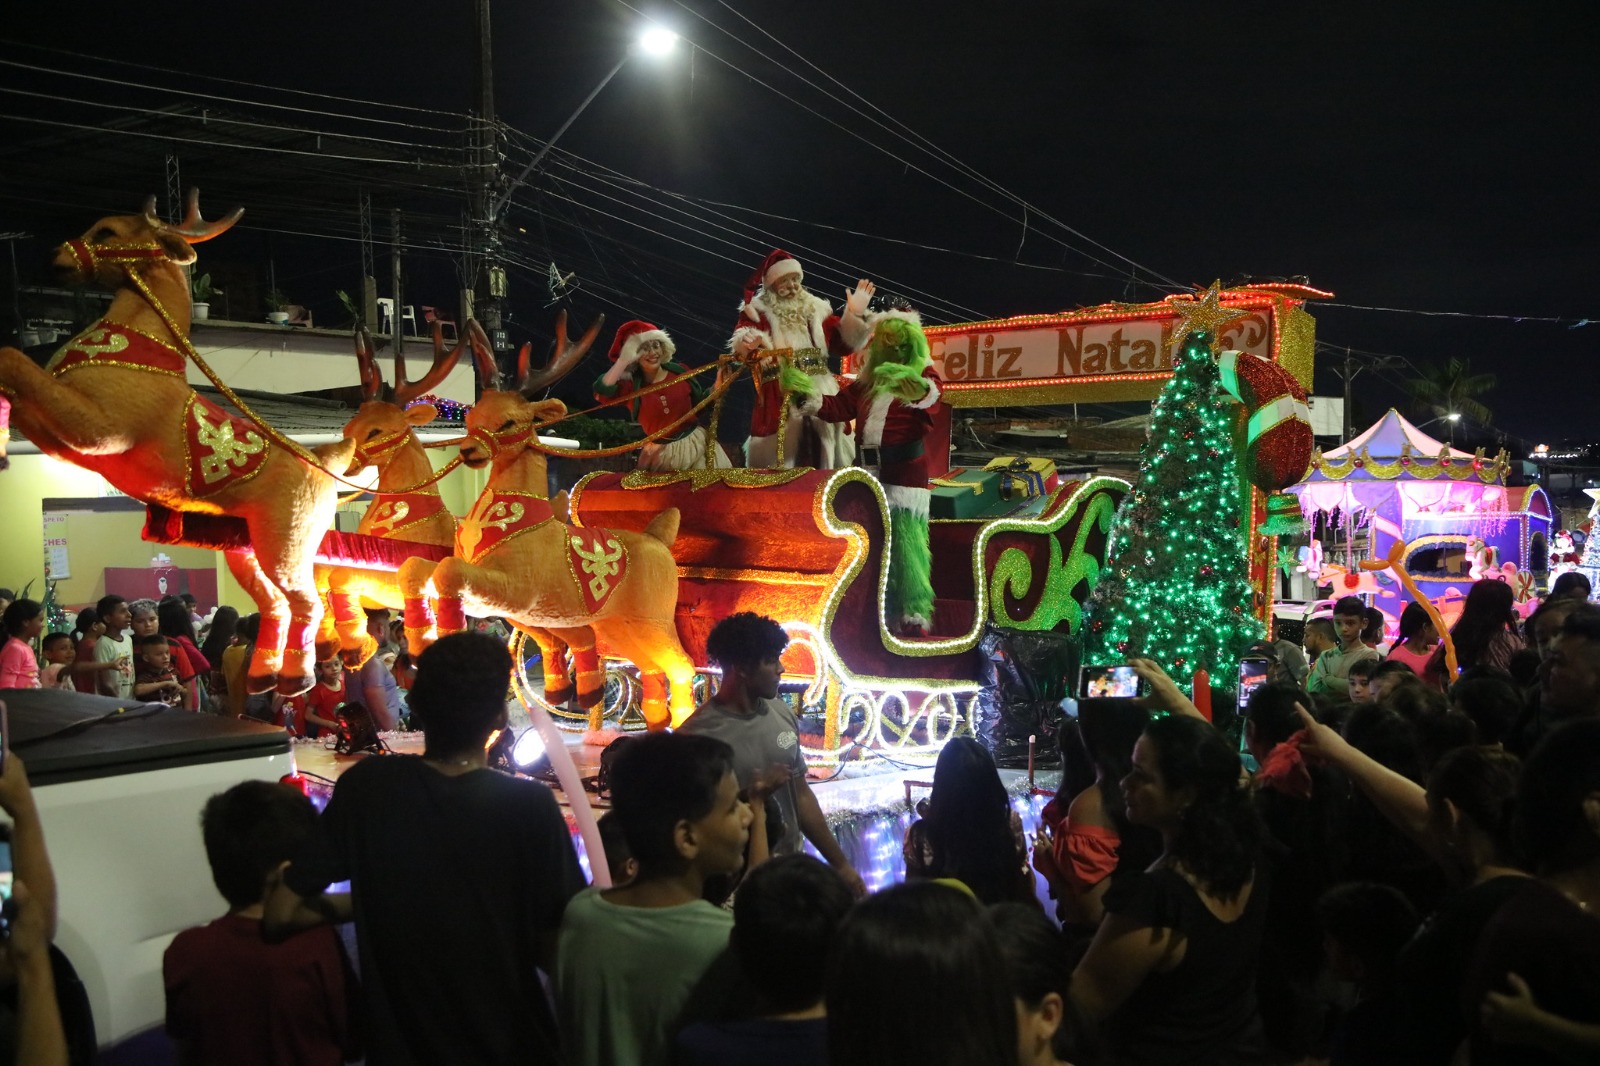 Parada Natalina da prefeitura contagia as ruas do bairro Jorge Teixeira com a magia do Natal das Águas